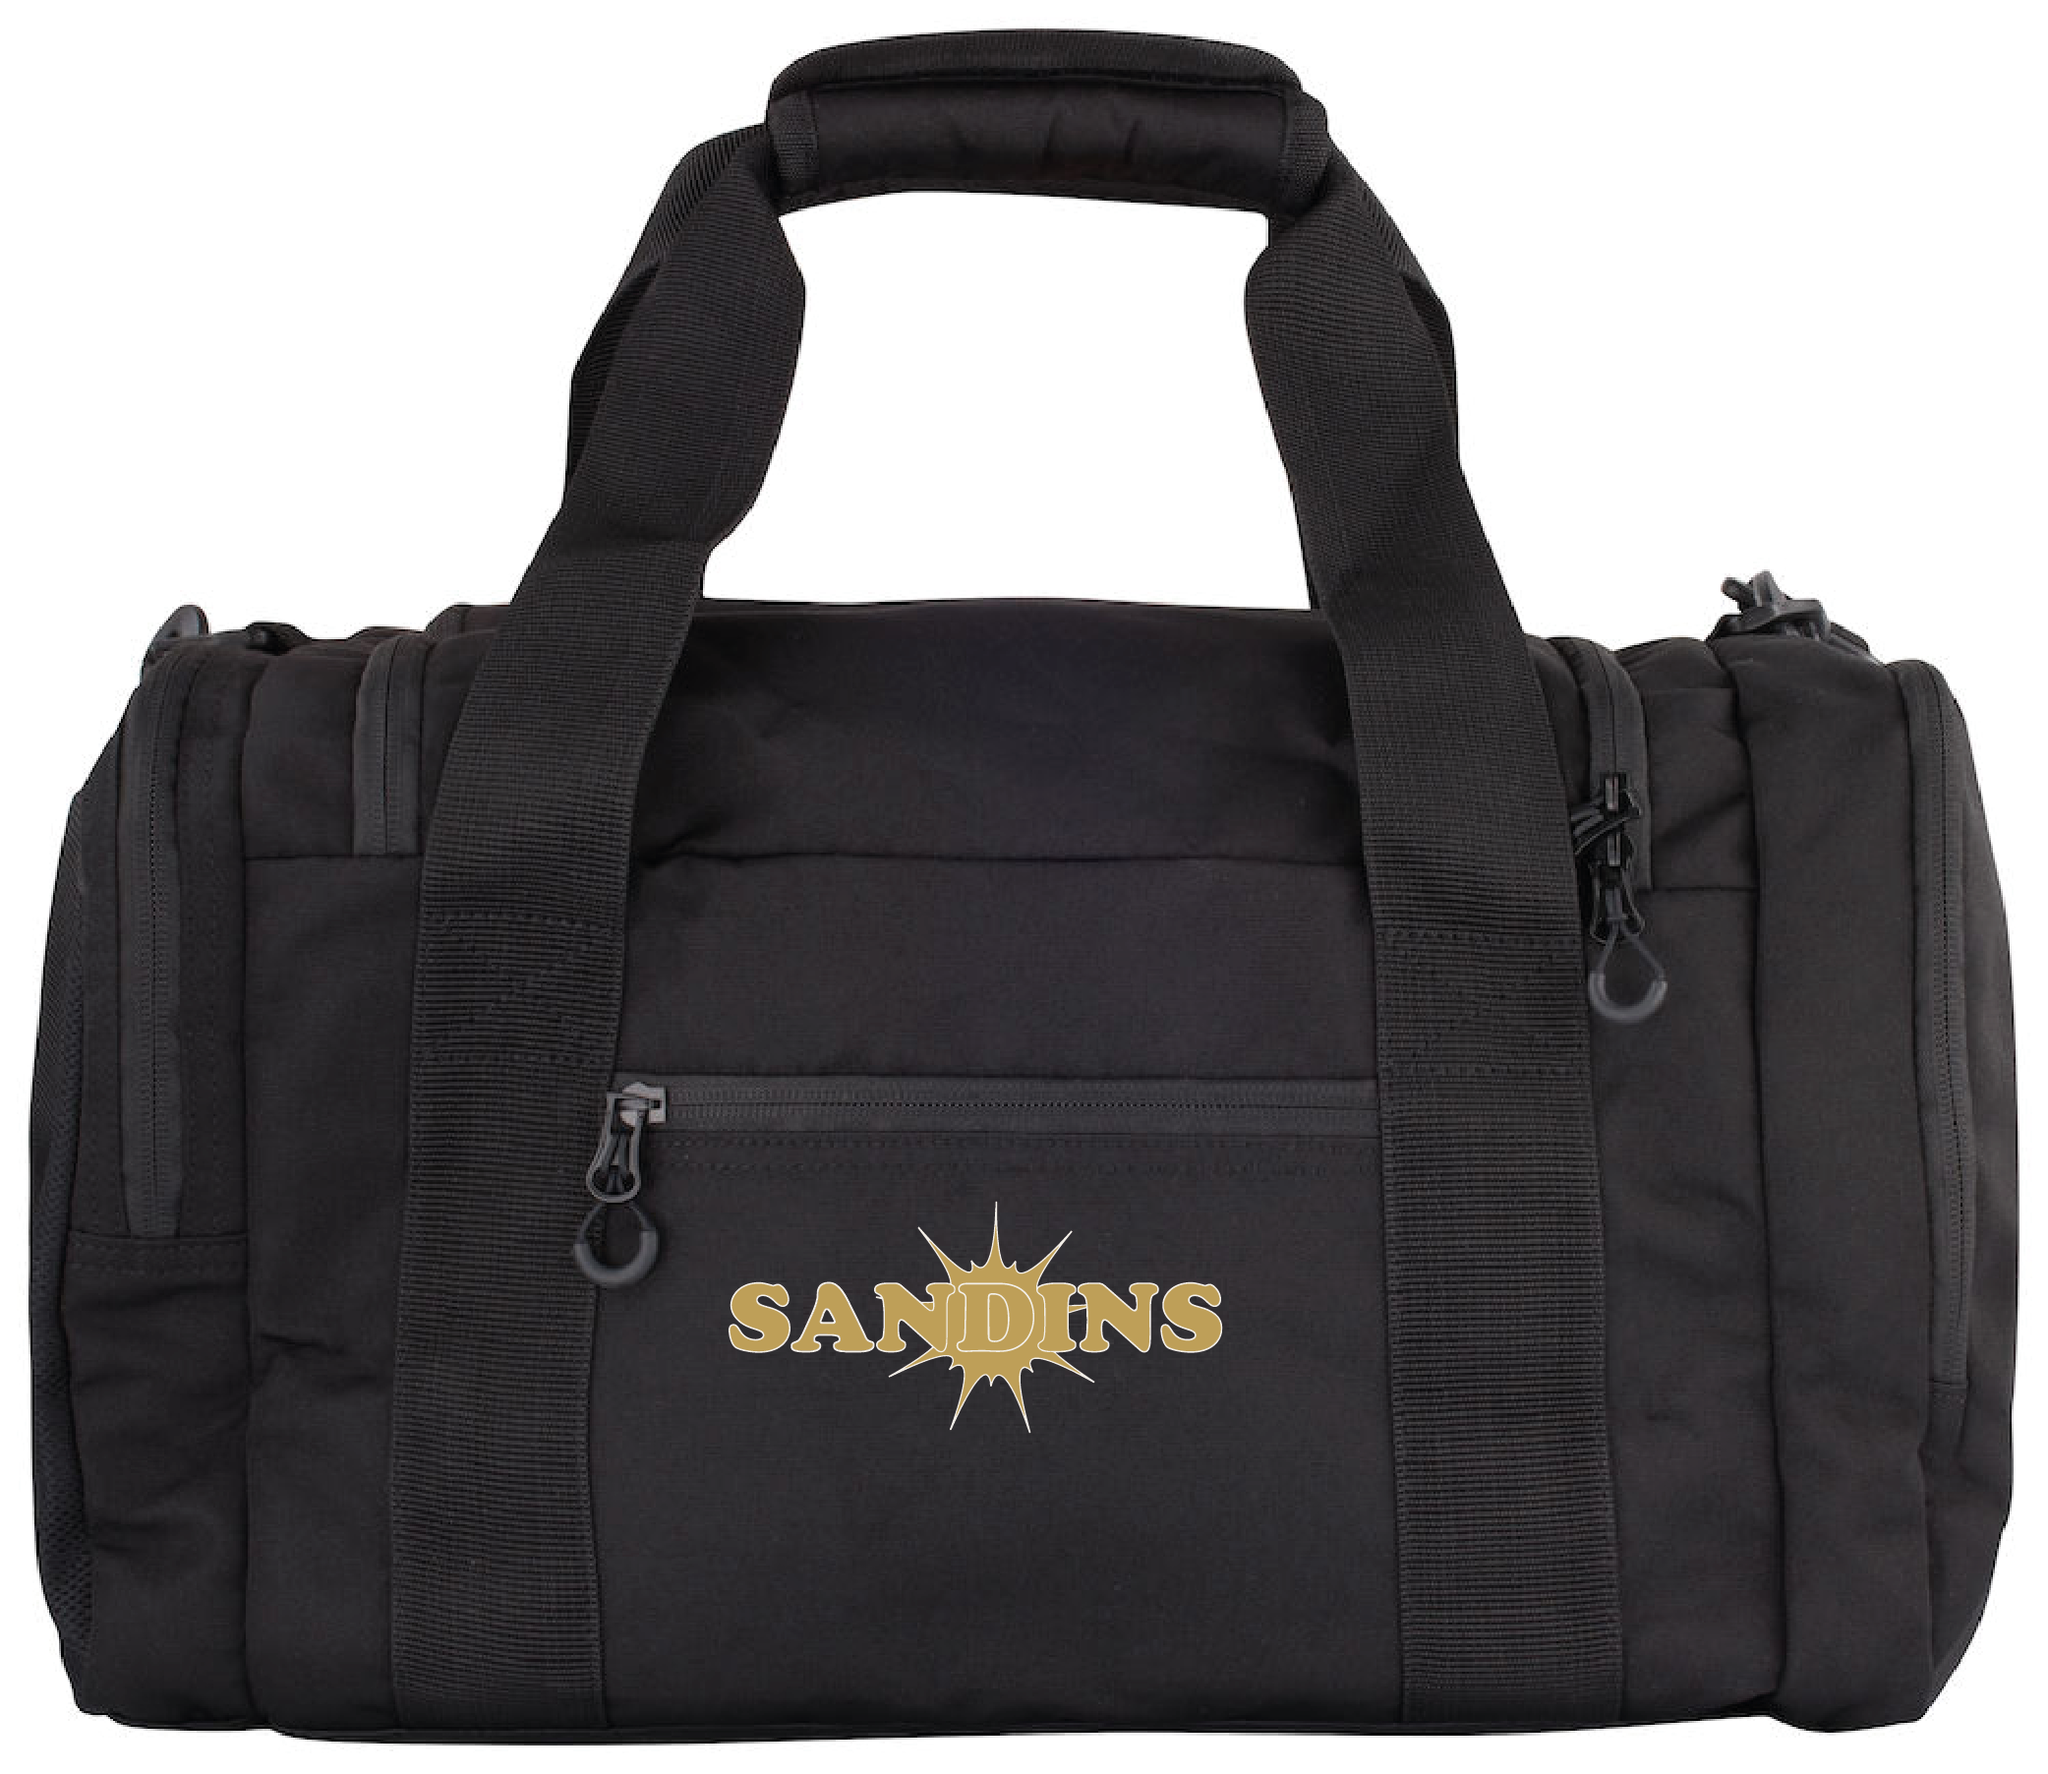 Travel Bag Small "SANDINS"